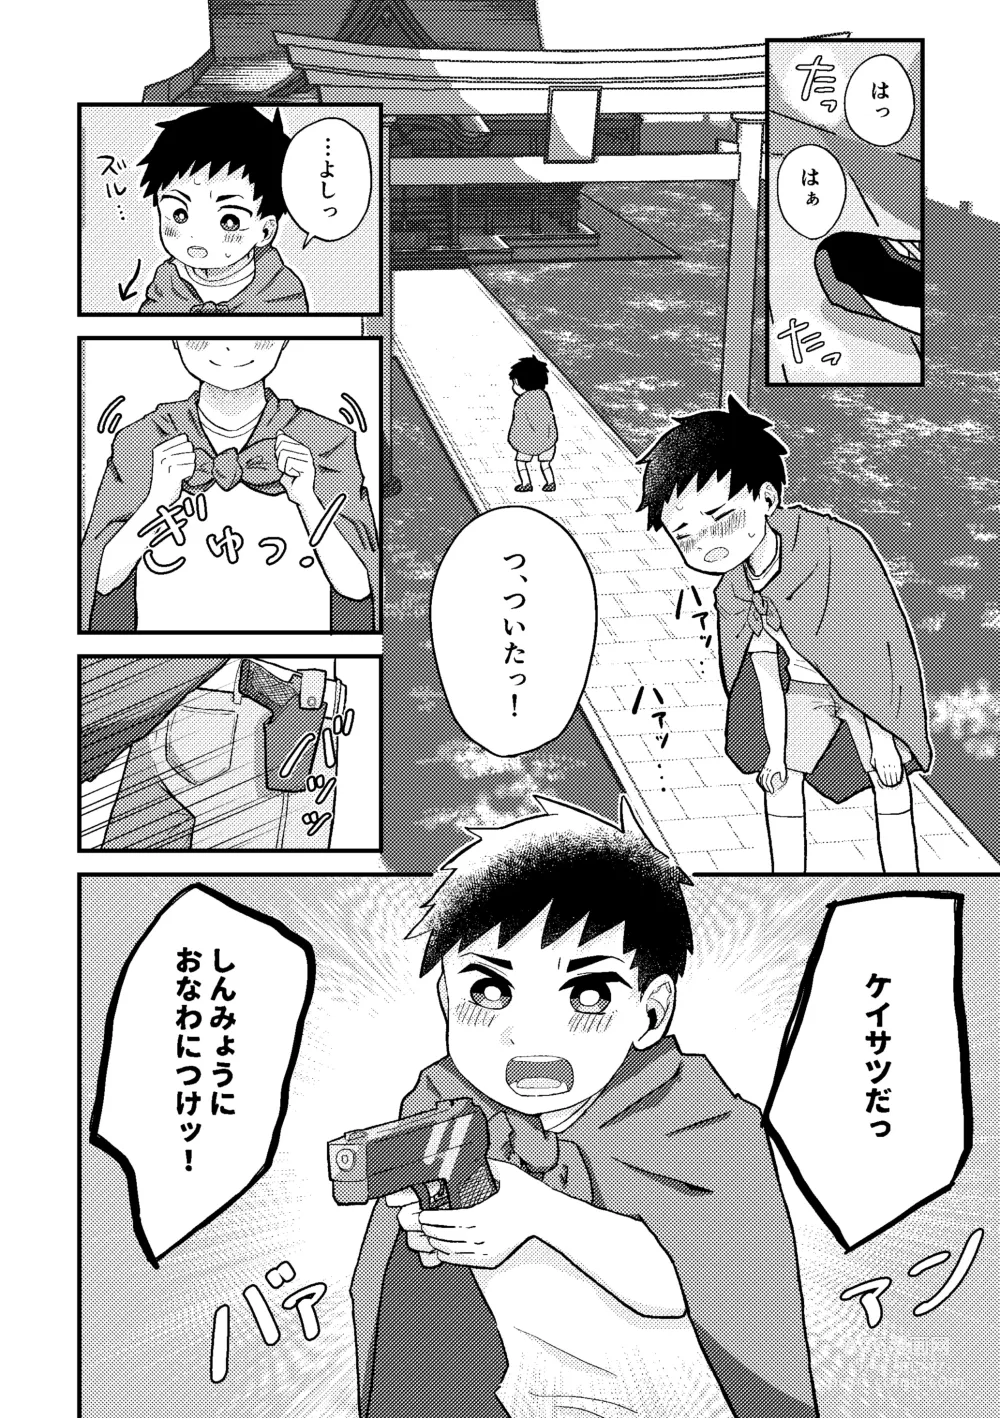 Page 7 of doujinshi Saigo no Natsuyasumi